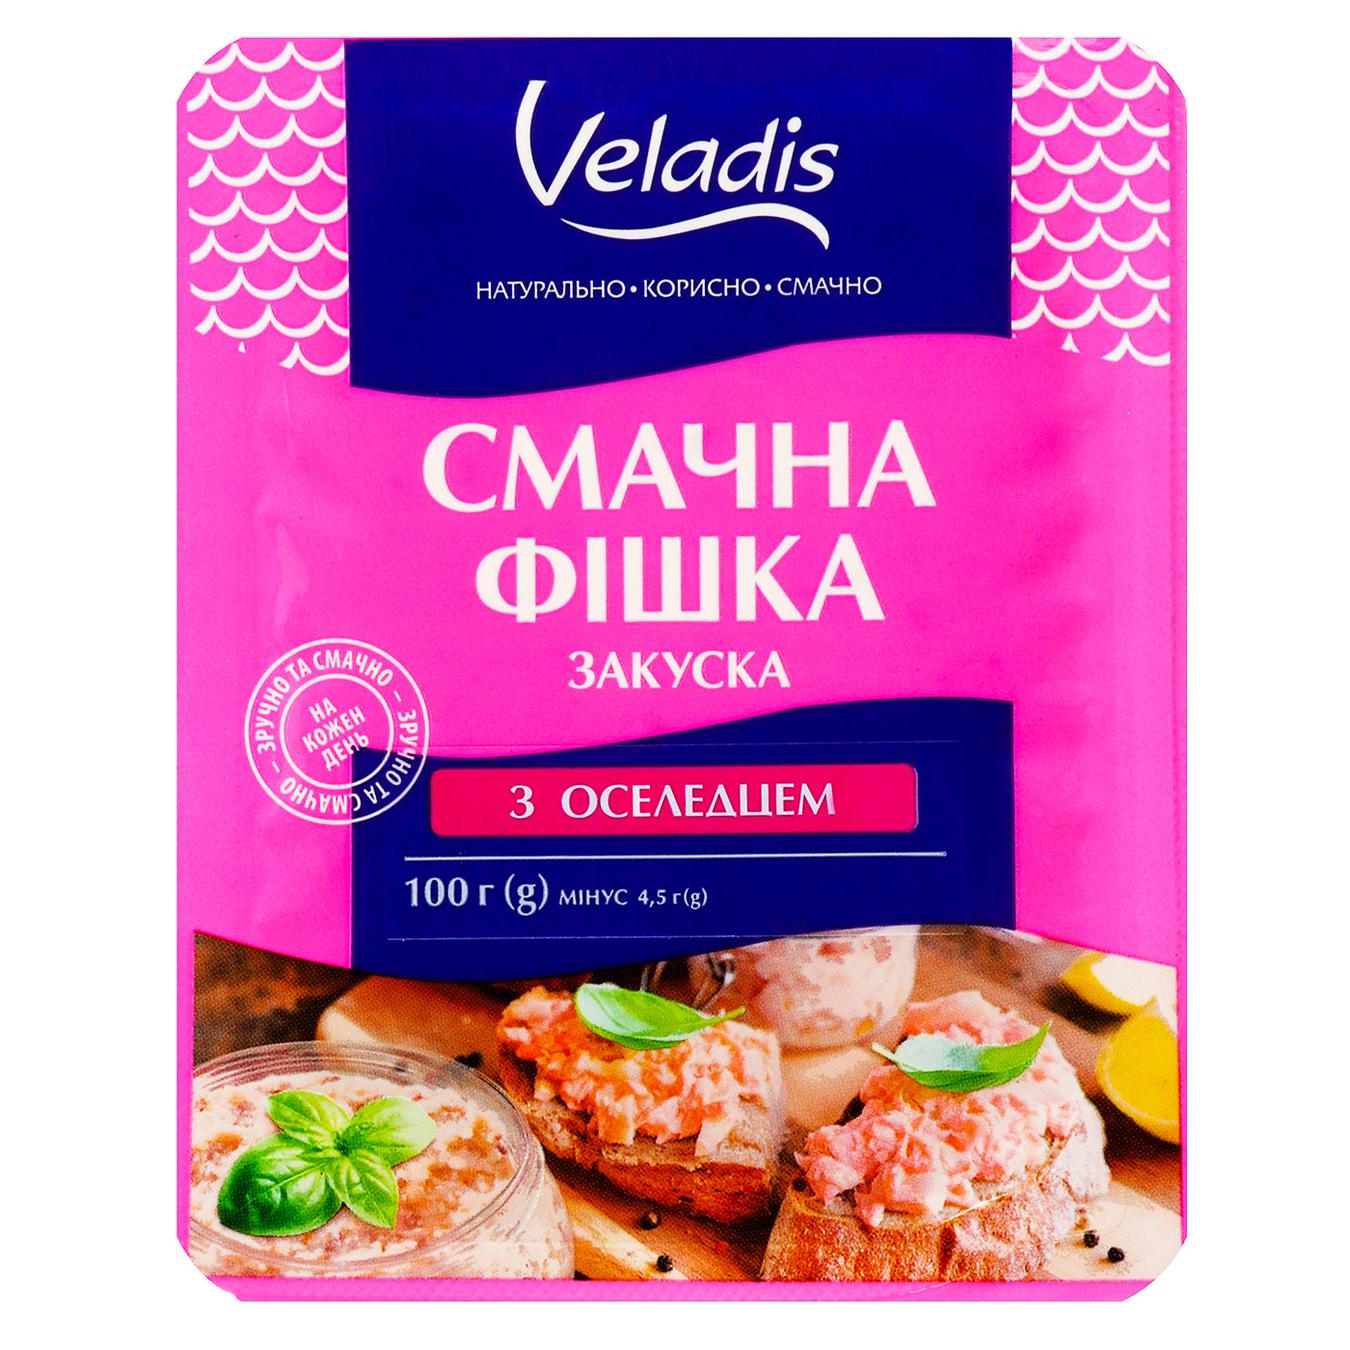 Закуска Veladis Вкусная фишка рыбная с сельдью 100г